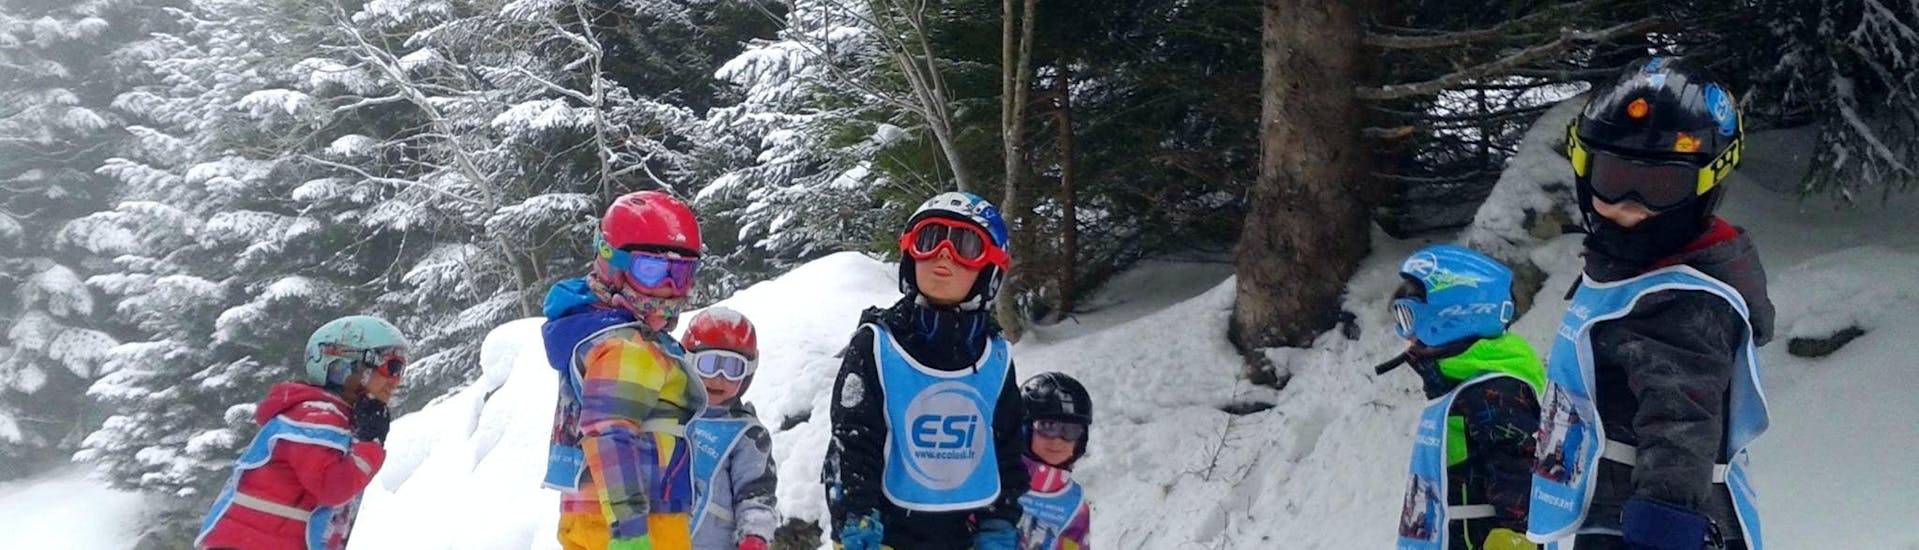 Los niños están parados en medios de las pistas rodeados de árboles durante sus clases de esquí para niños (5-15 años) - Tarde con la escuela de esquí ESI Ecoloski Barèges.